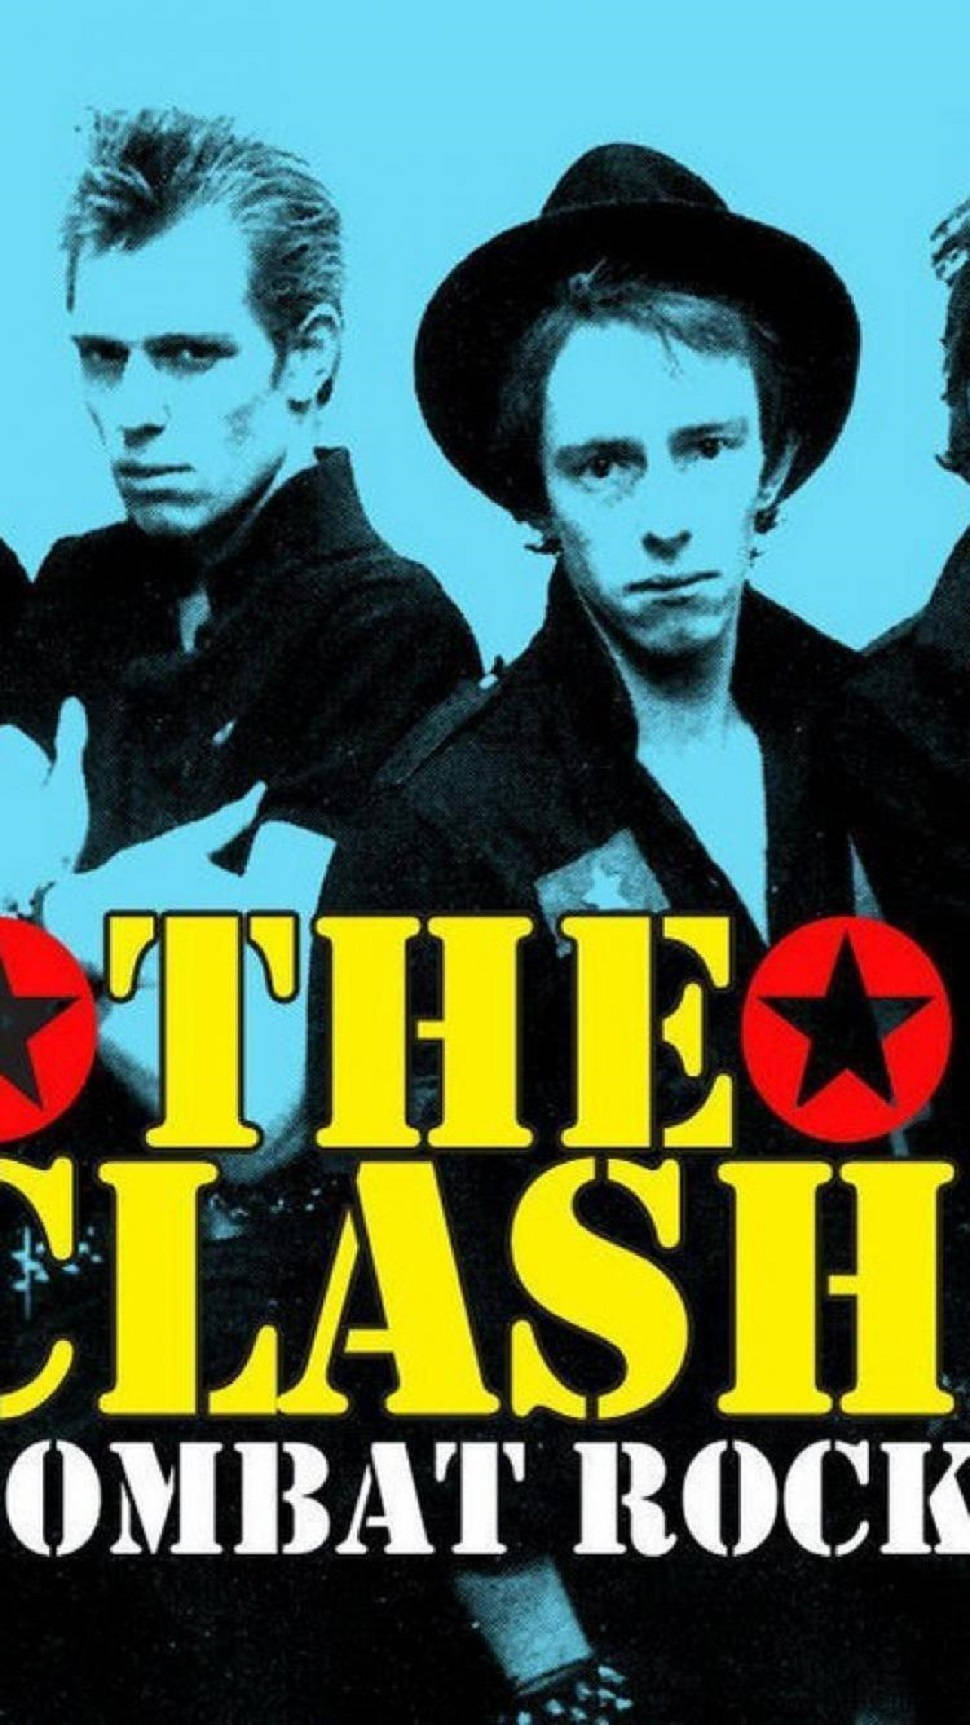 The Clash Combat Rock Studio Album Wallpaper